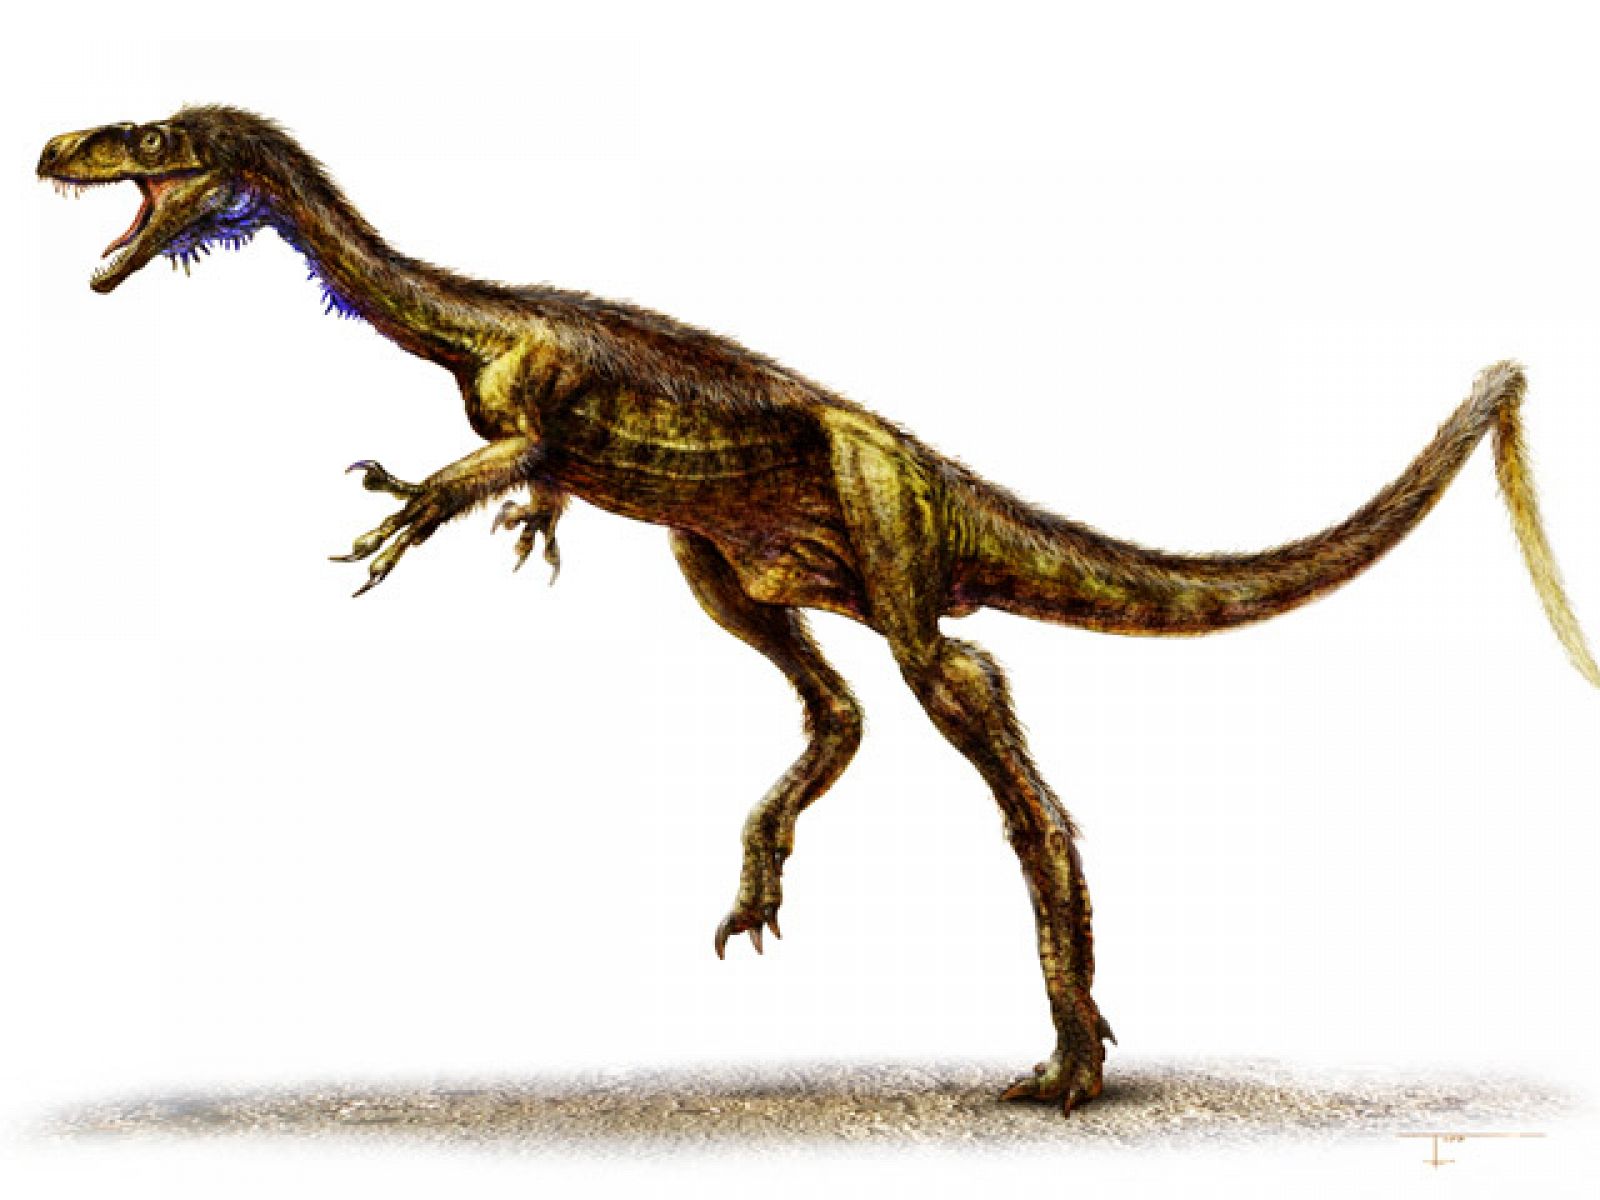 Así era el Eodromaeus, una especie que vivió hace 230 millones de años, a finales del Triásico tardío.